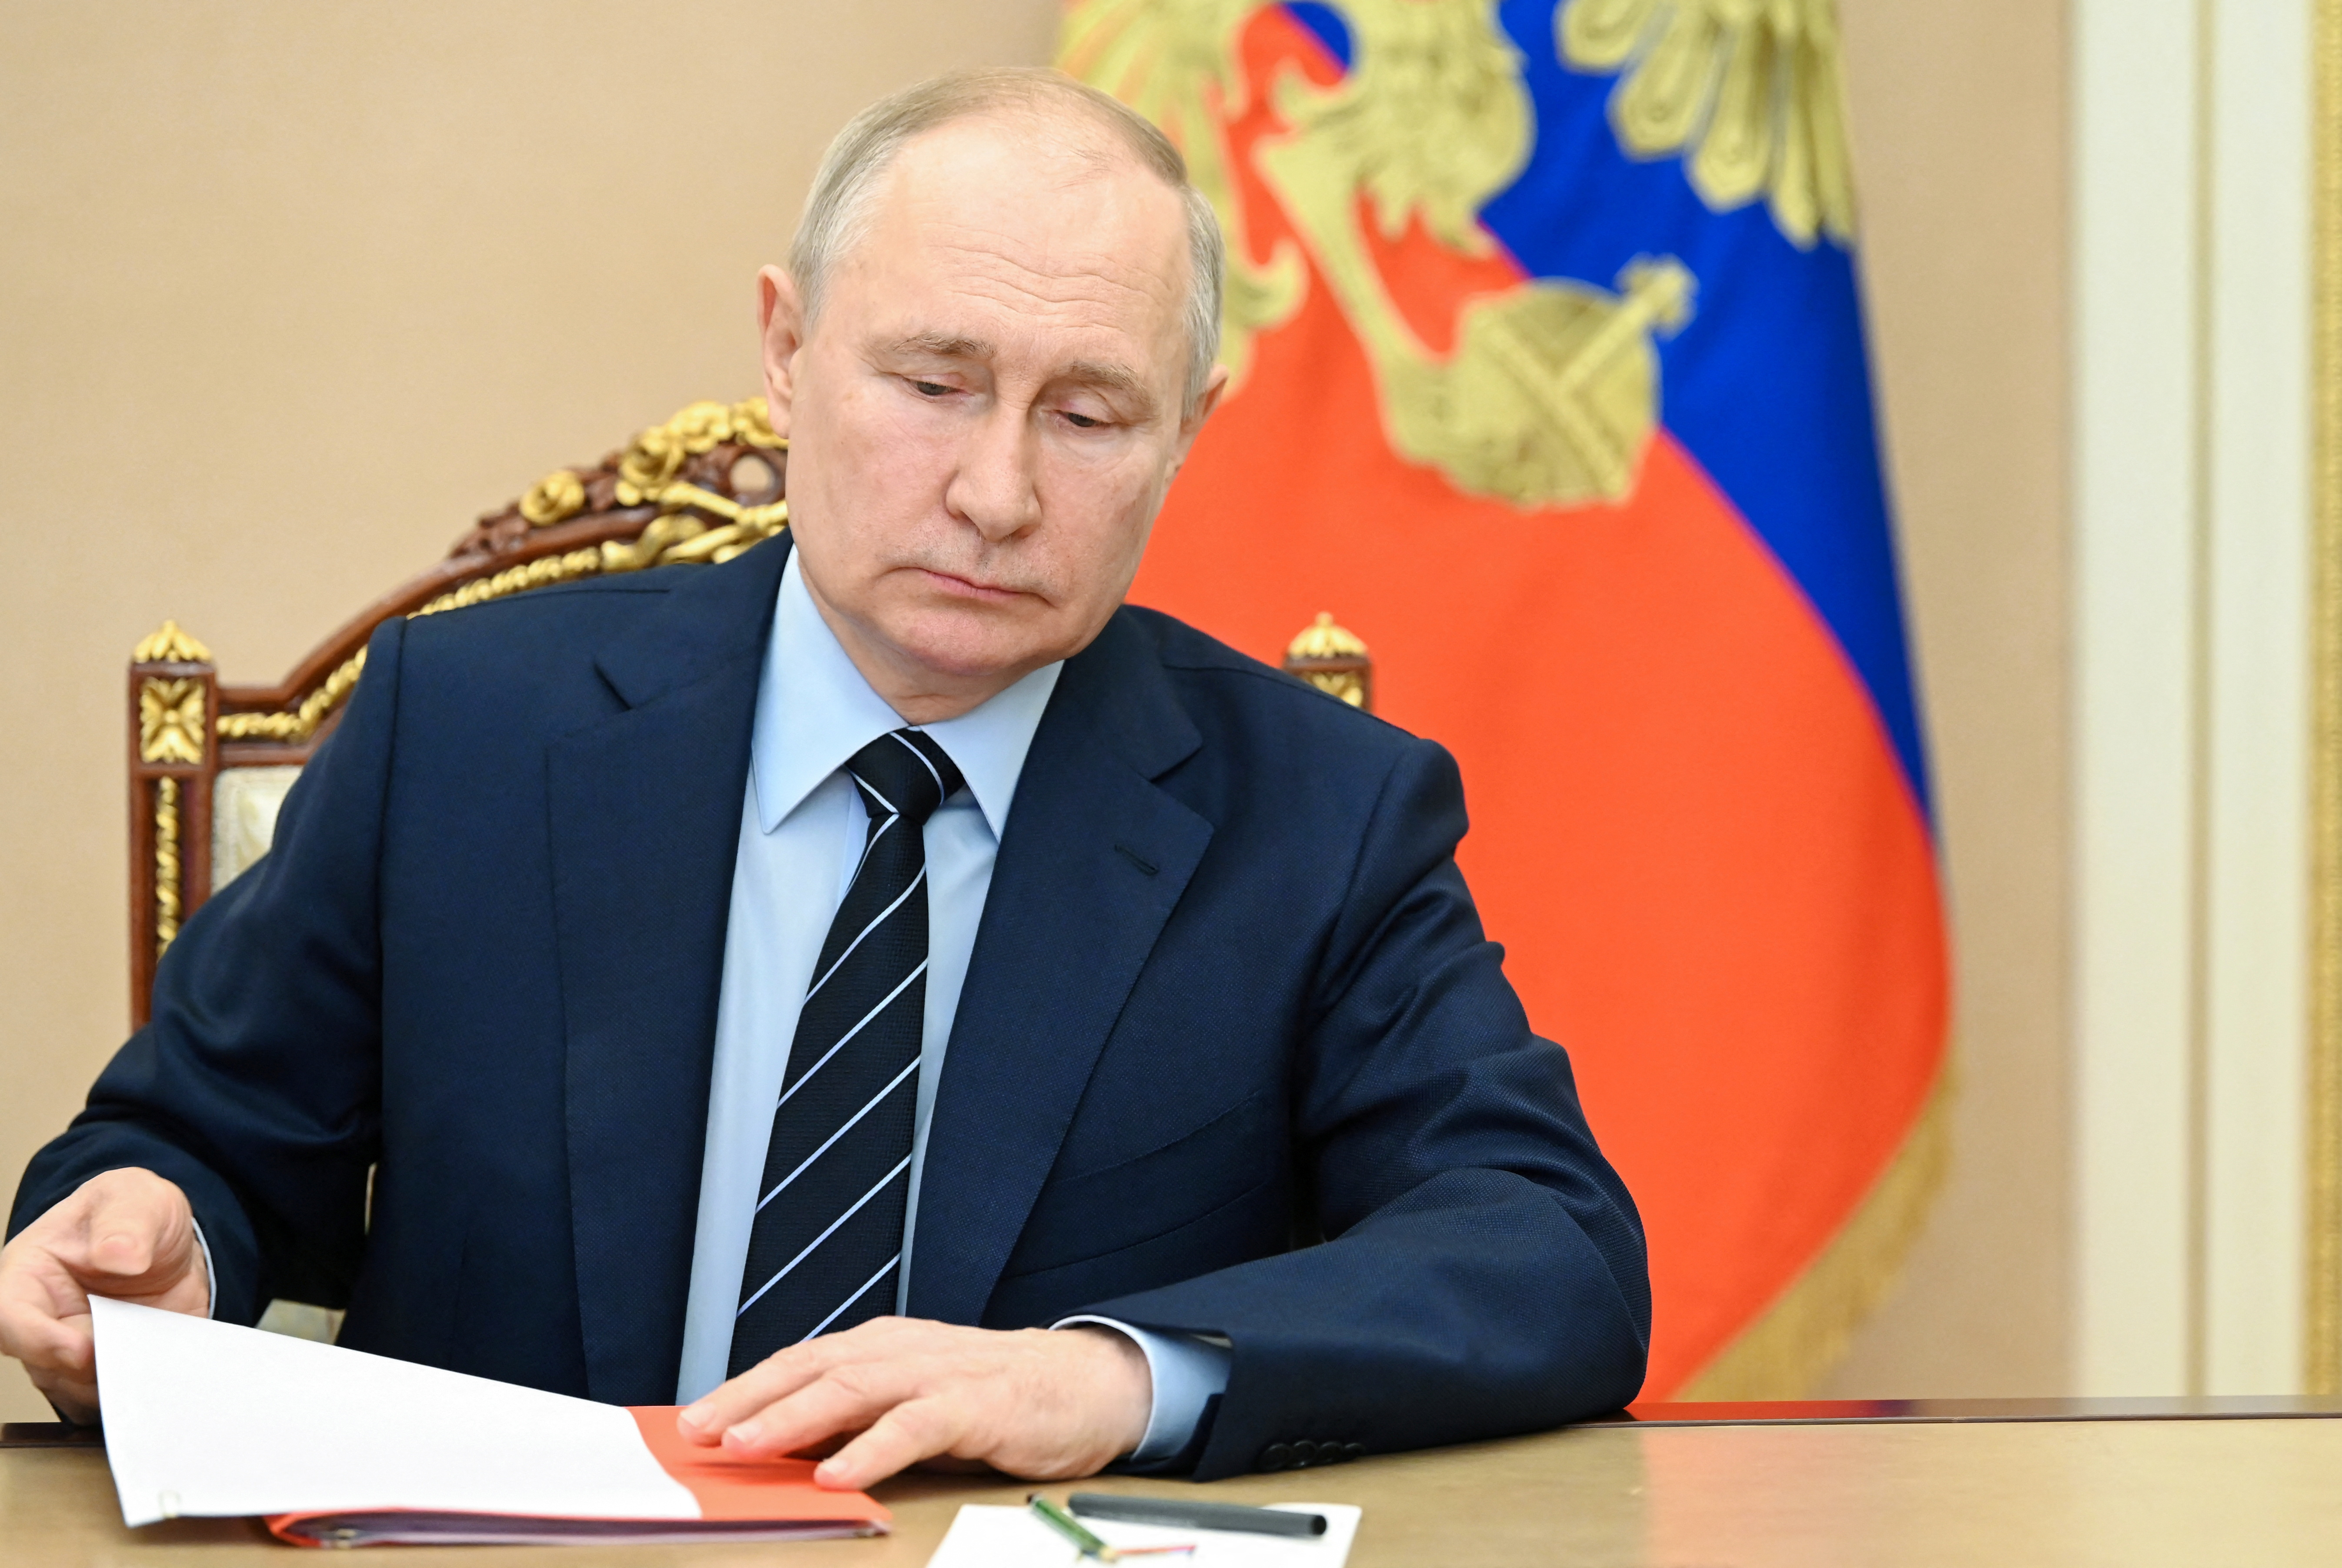 Sommet Russie-Afrique : Vladimir Poutine promet de livrer gratuitement des céréales à six pays africains